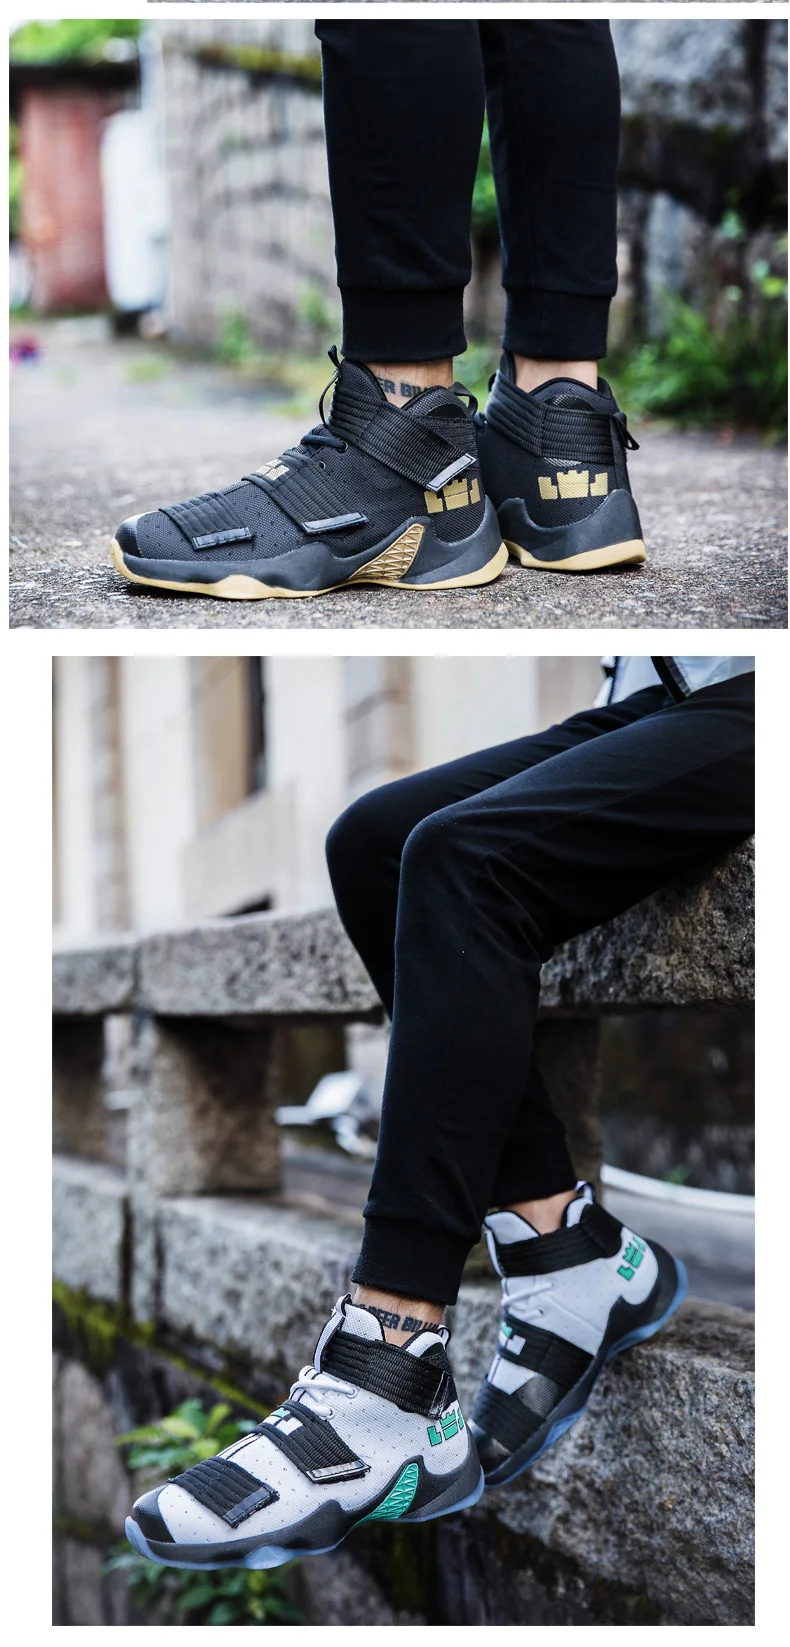 Мужские баскетбольные кроссовки для пары спортивные мужские кроссовки LBJ спортивные кроссовки мужские высокие дышащие кроссовки Zapatillas De Baloncesto